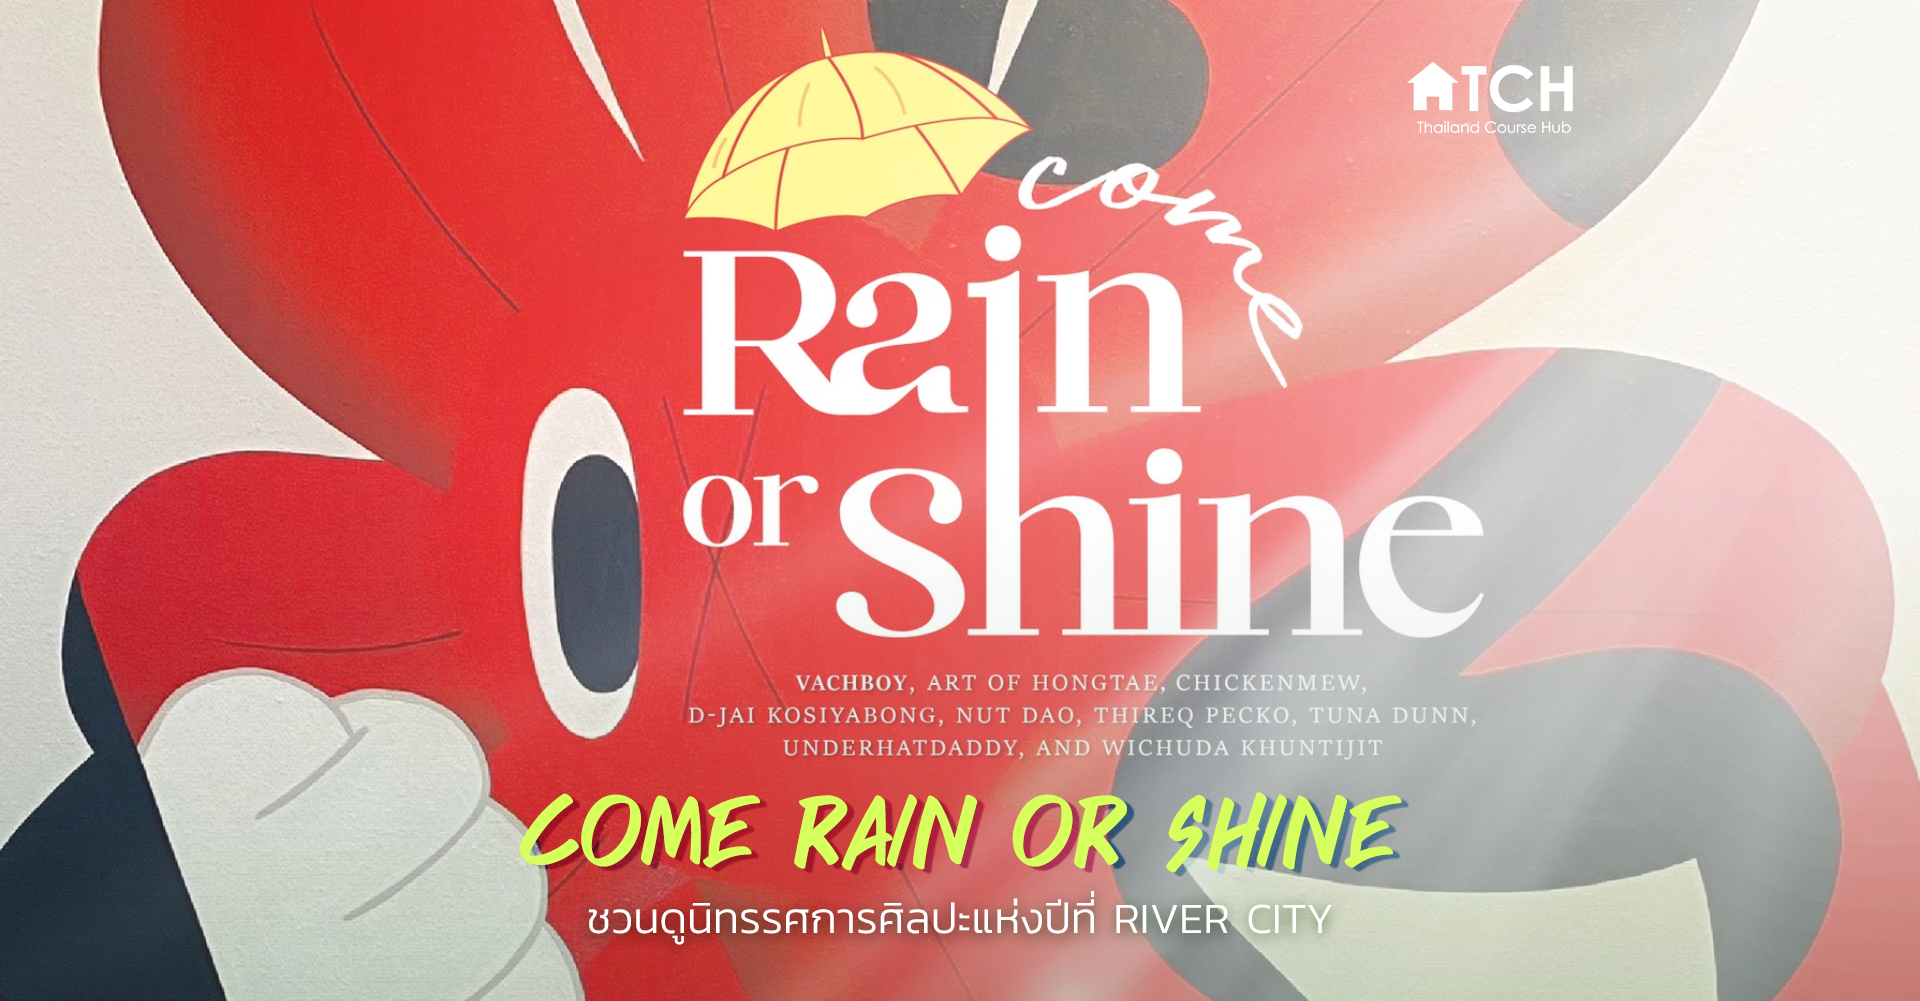 Come rain or shine art exhibition